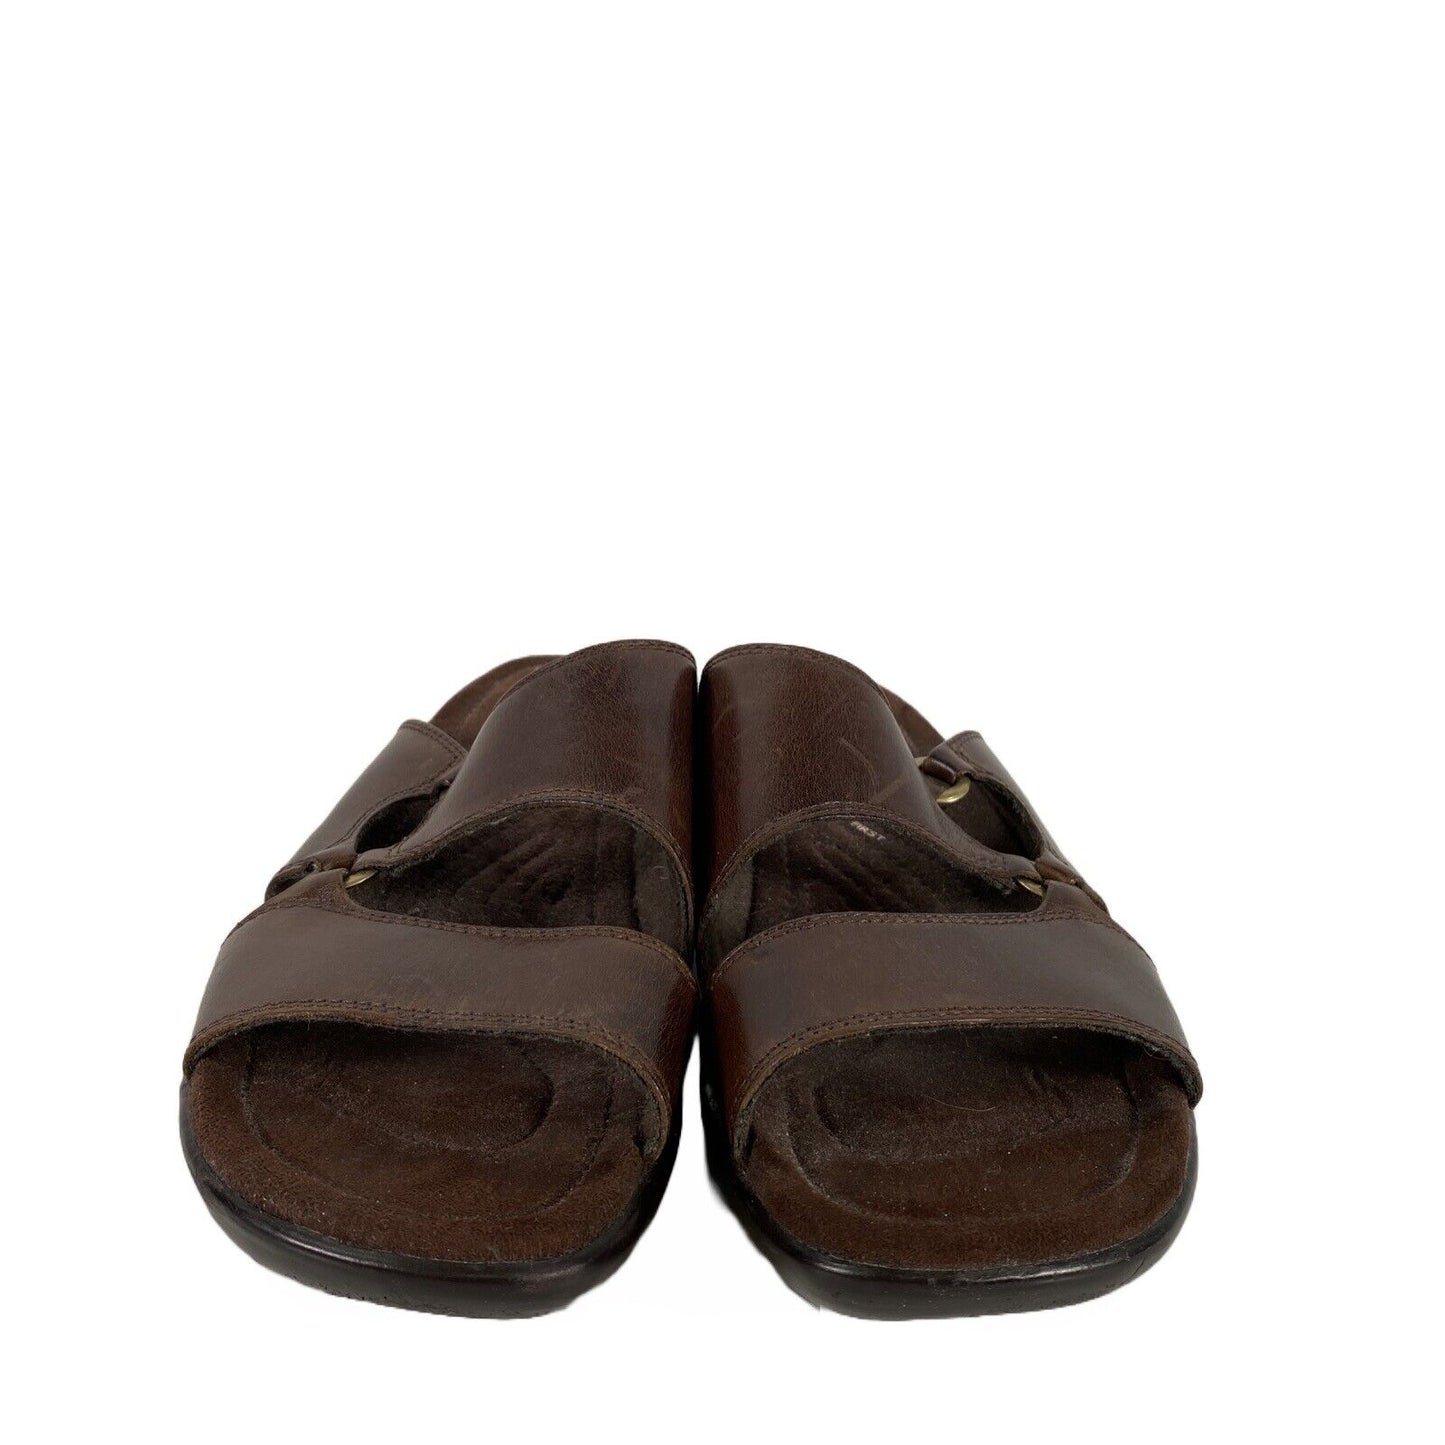 Earth Spirit Women's Dark Brown Leather Gum Slip On Sandals - 11